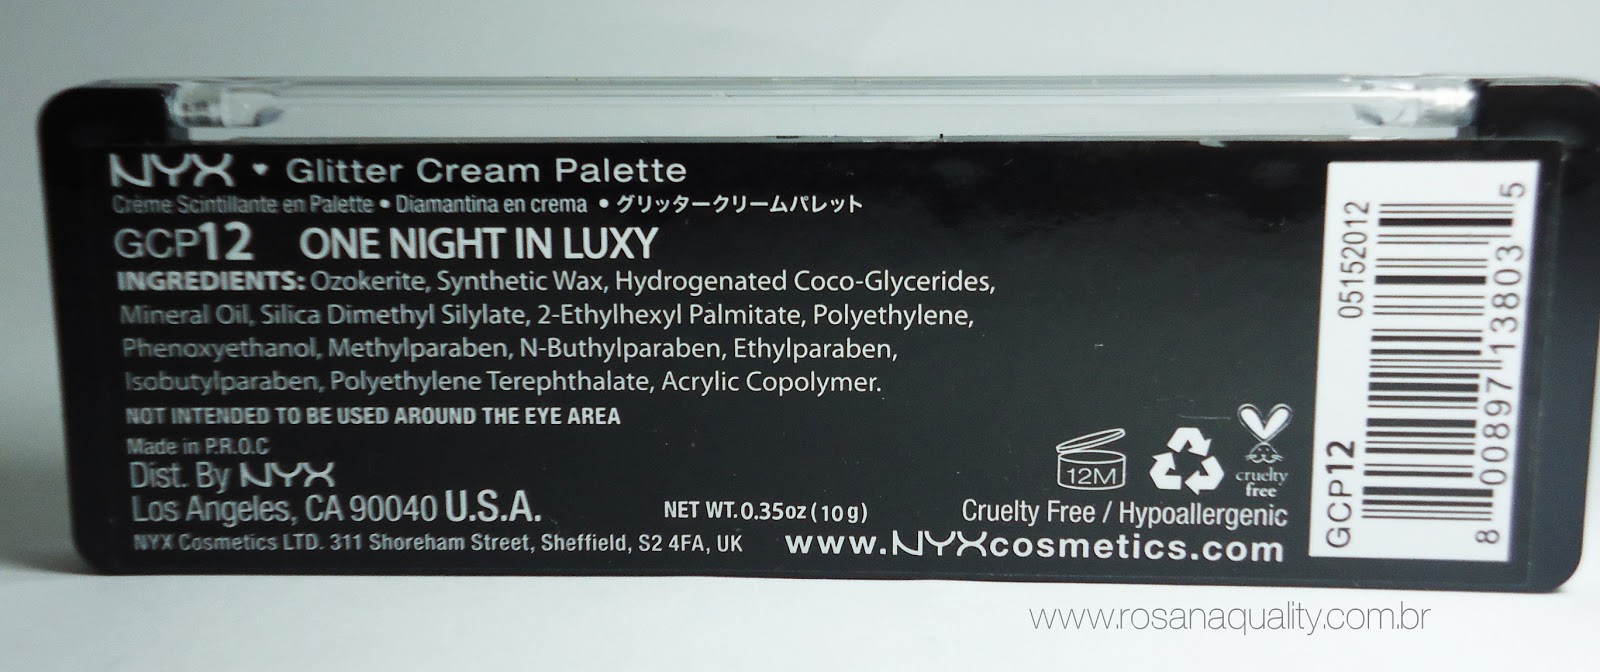 Glitter Cream Palette Nyx